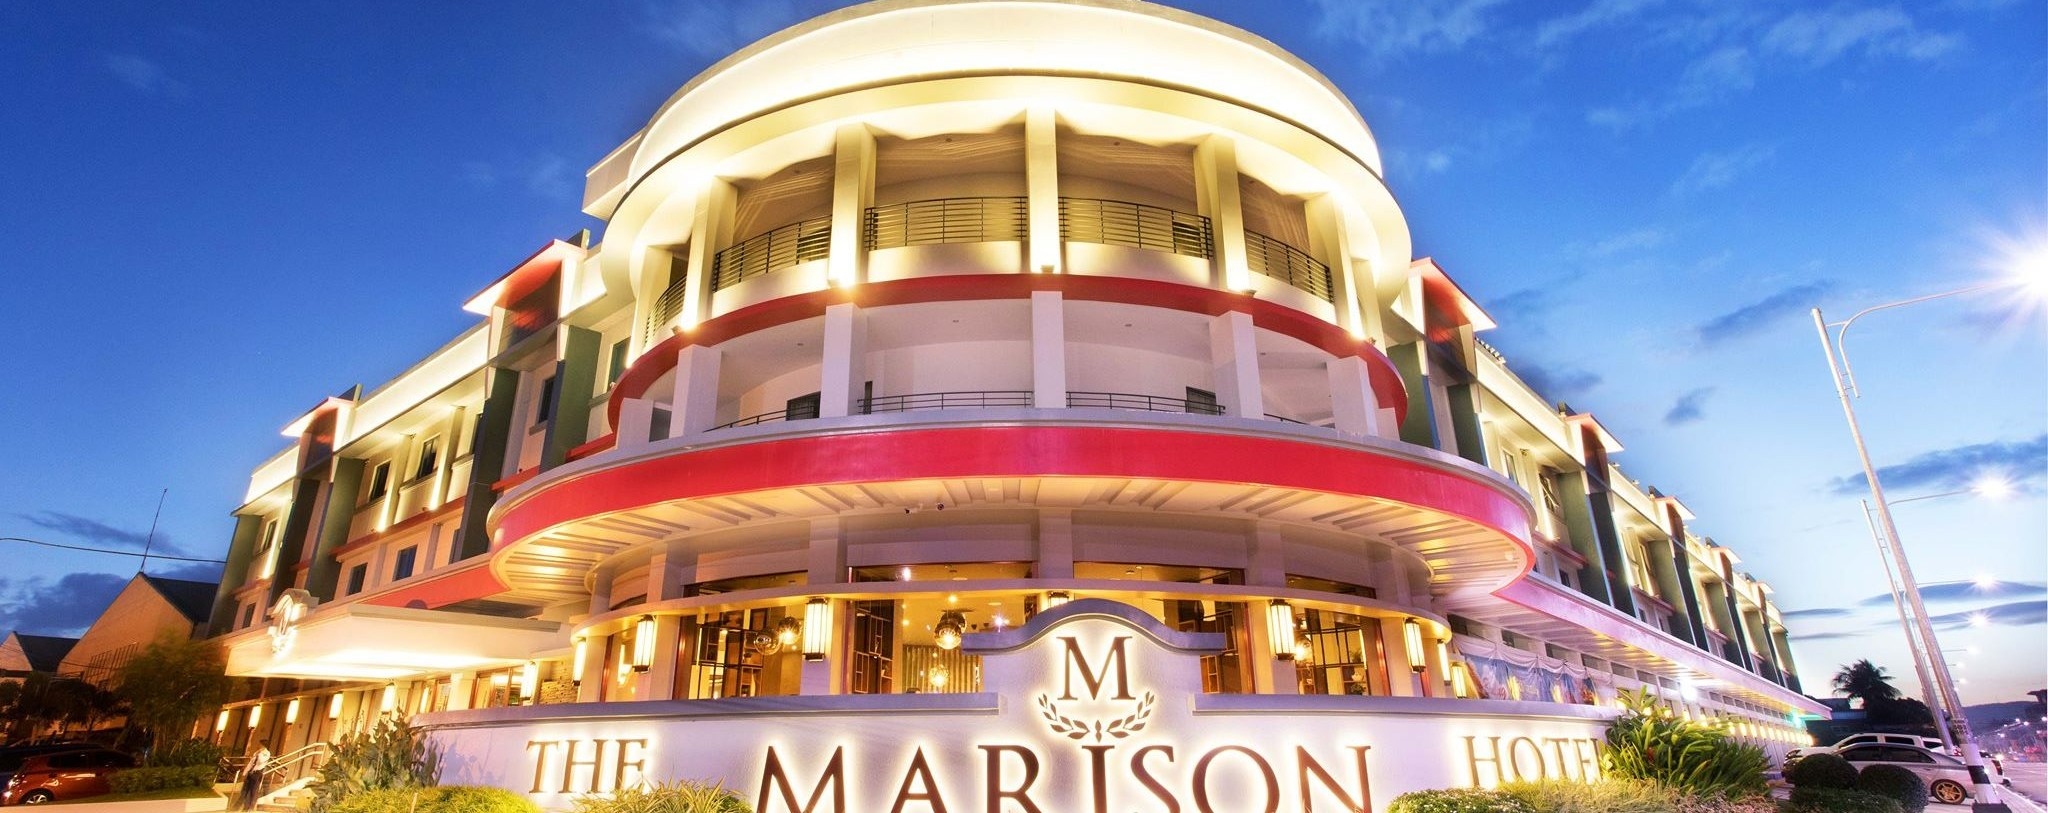 The Marison Hotel Legazpi City Albay